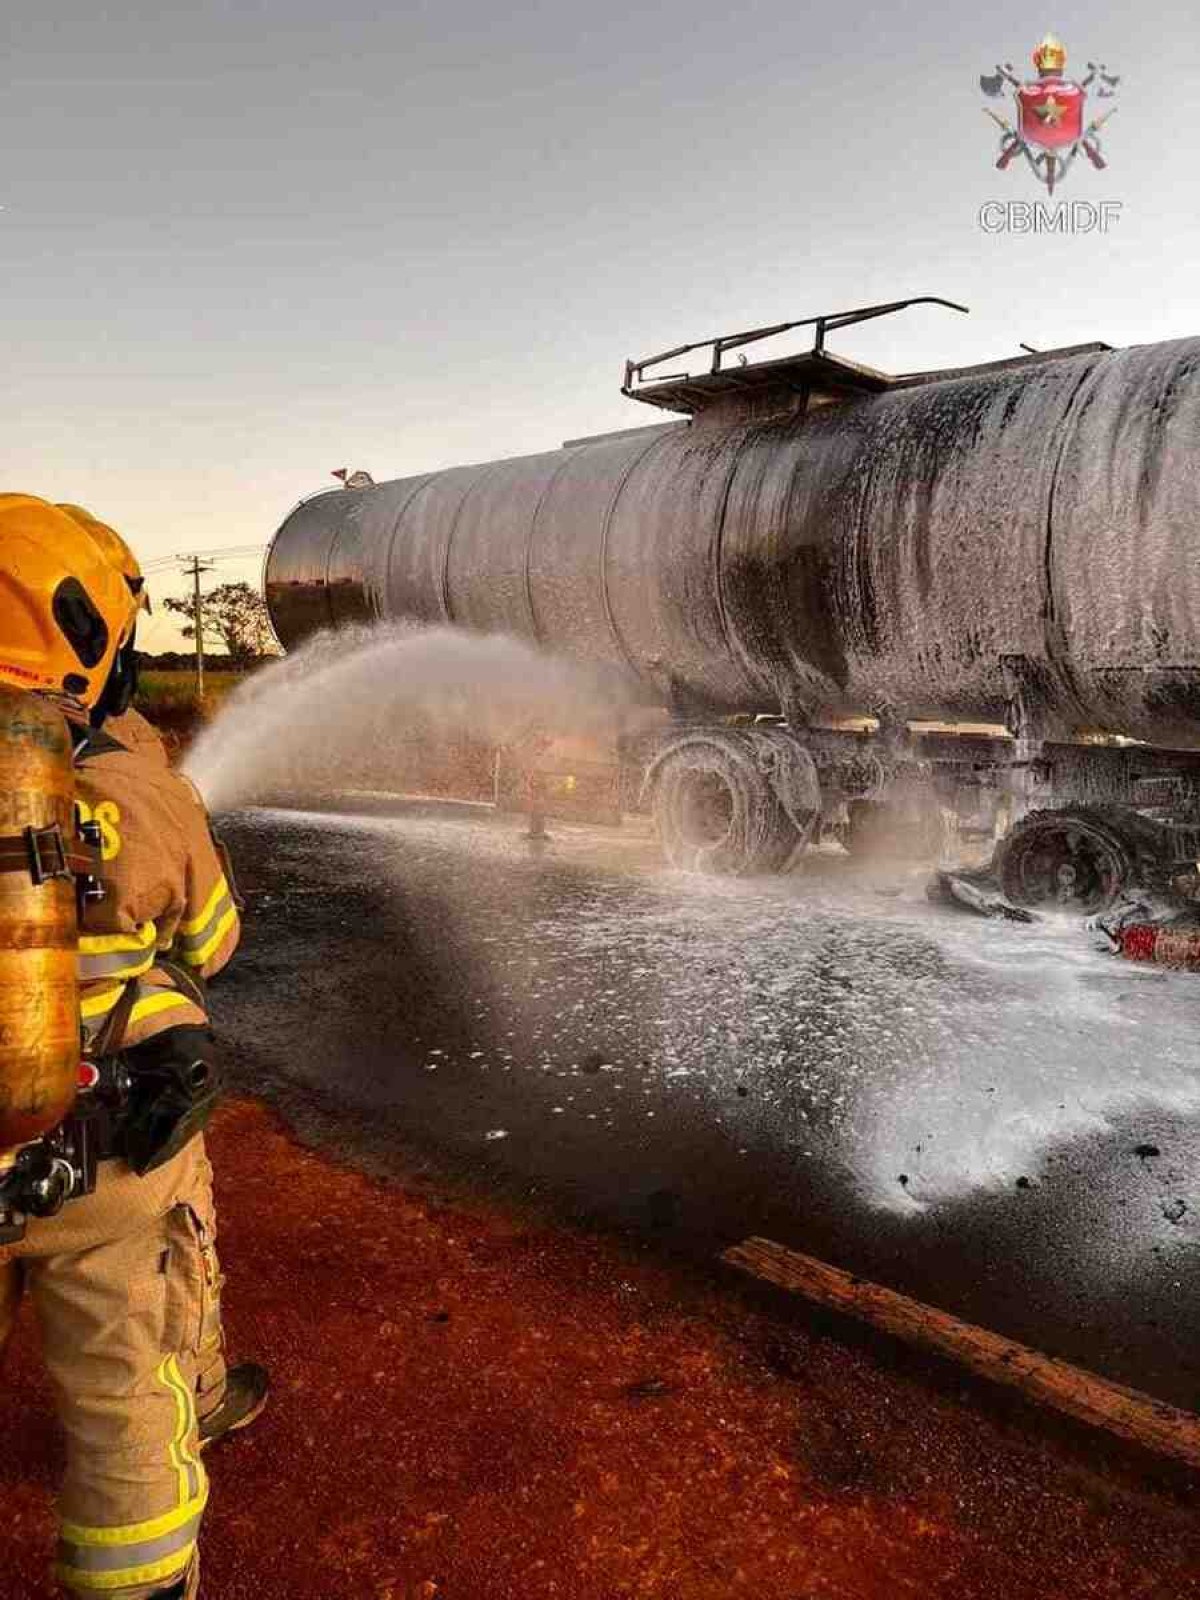 Os bombeiros apagaram o fogo com o uso de espuma extintora 